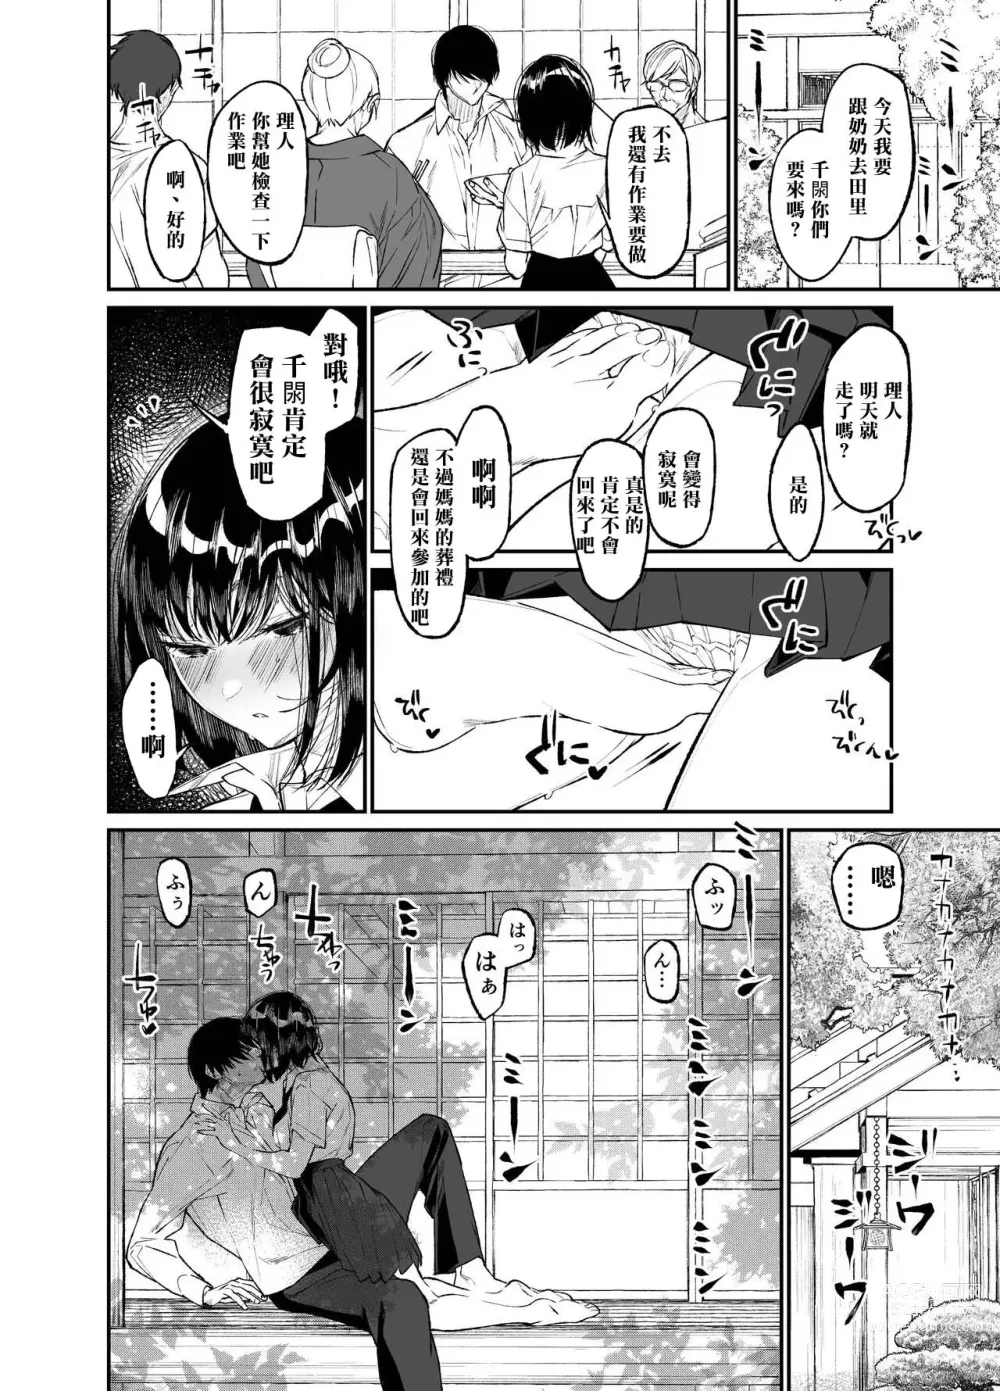 Page 48 of doujinshi Natsu, Shoujo wa Tonde, Hi ni Iru.